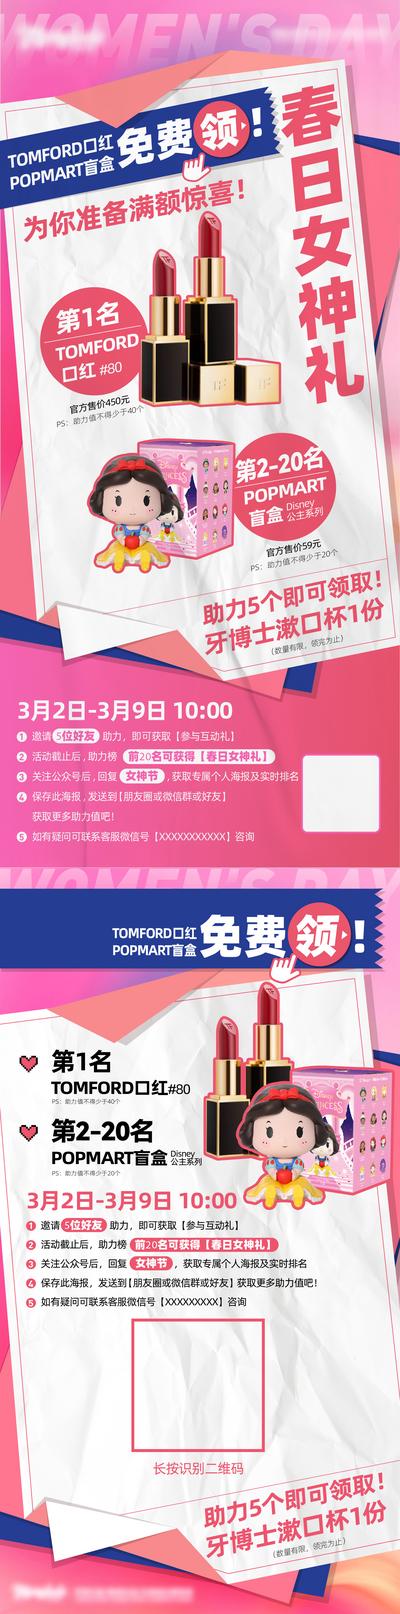 南门网 海报 女神节 活动 促销 口红 盲盒 抽奖 助力 礼品